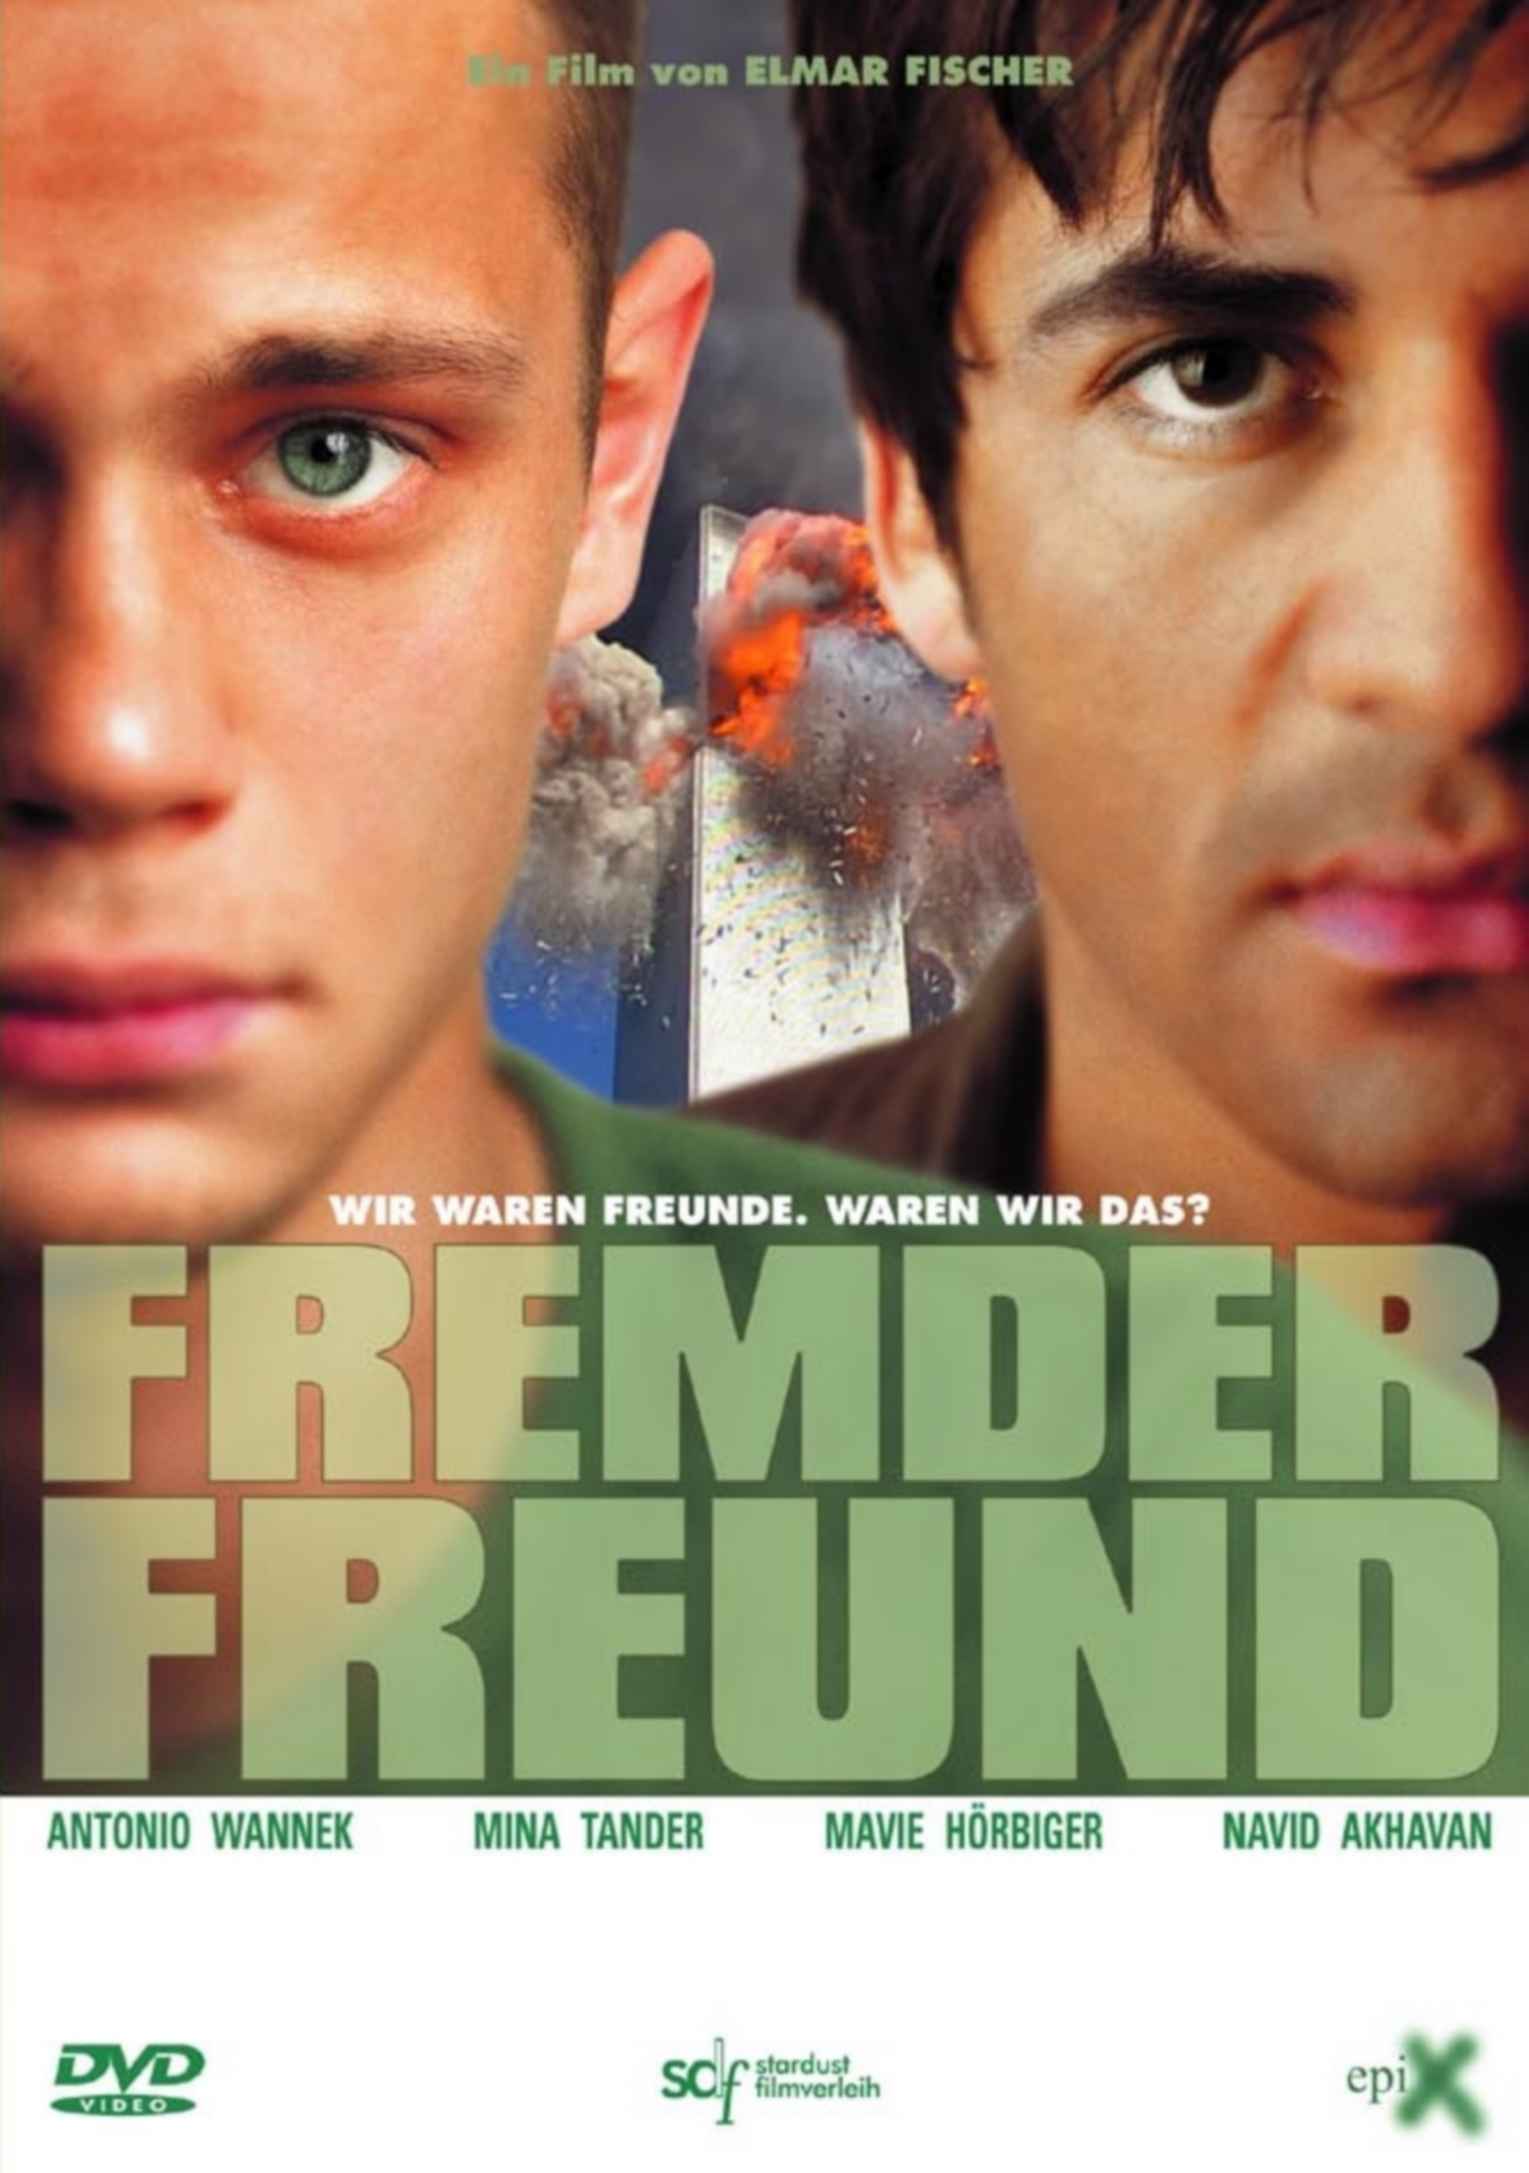 FREMDER FREUND DVD Cover Front